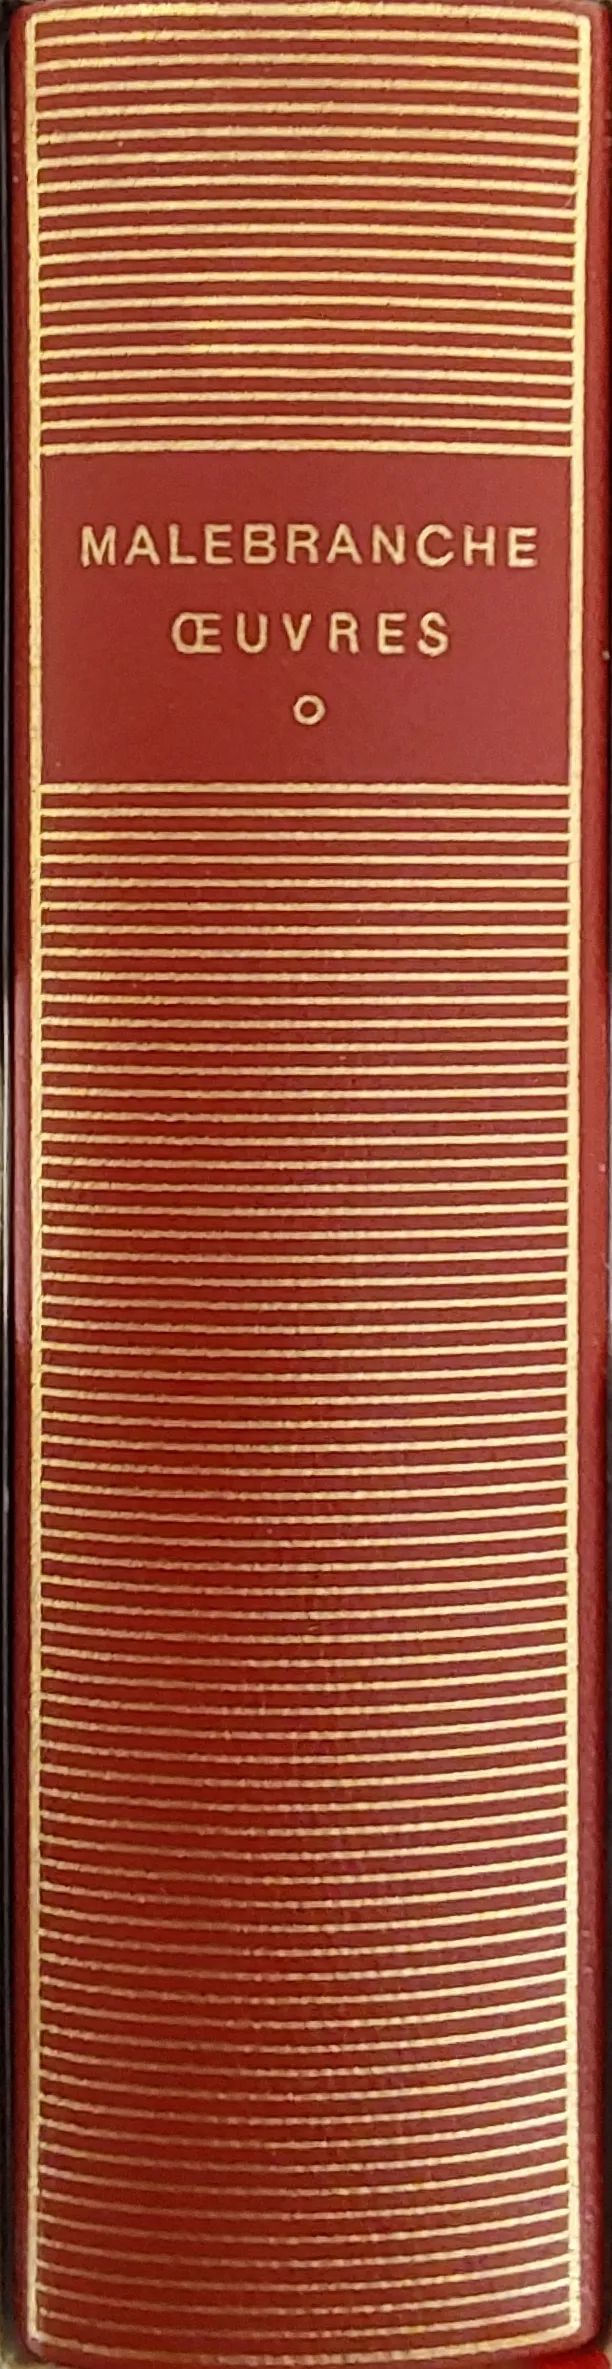 Volume 277 de BNicolas Malebranche dans la bibliothèque de la Pléiade.